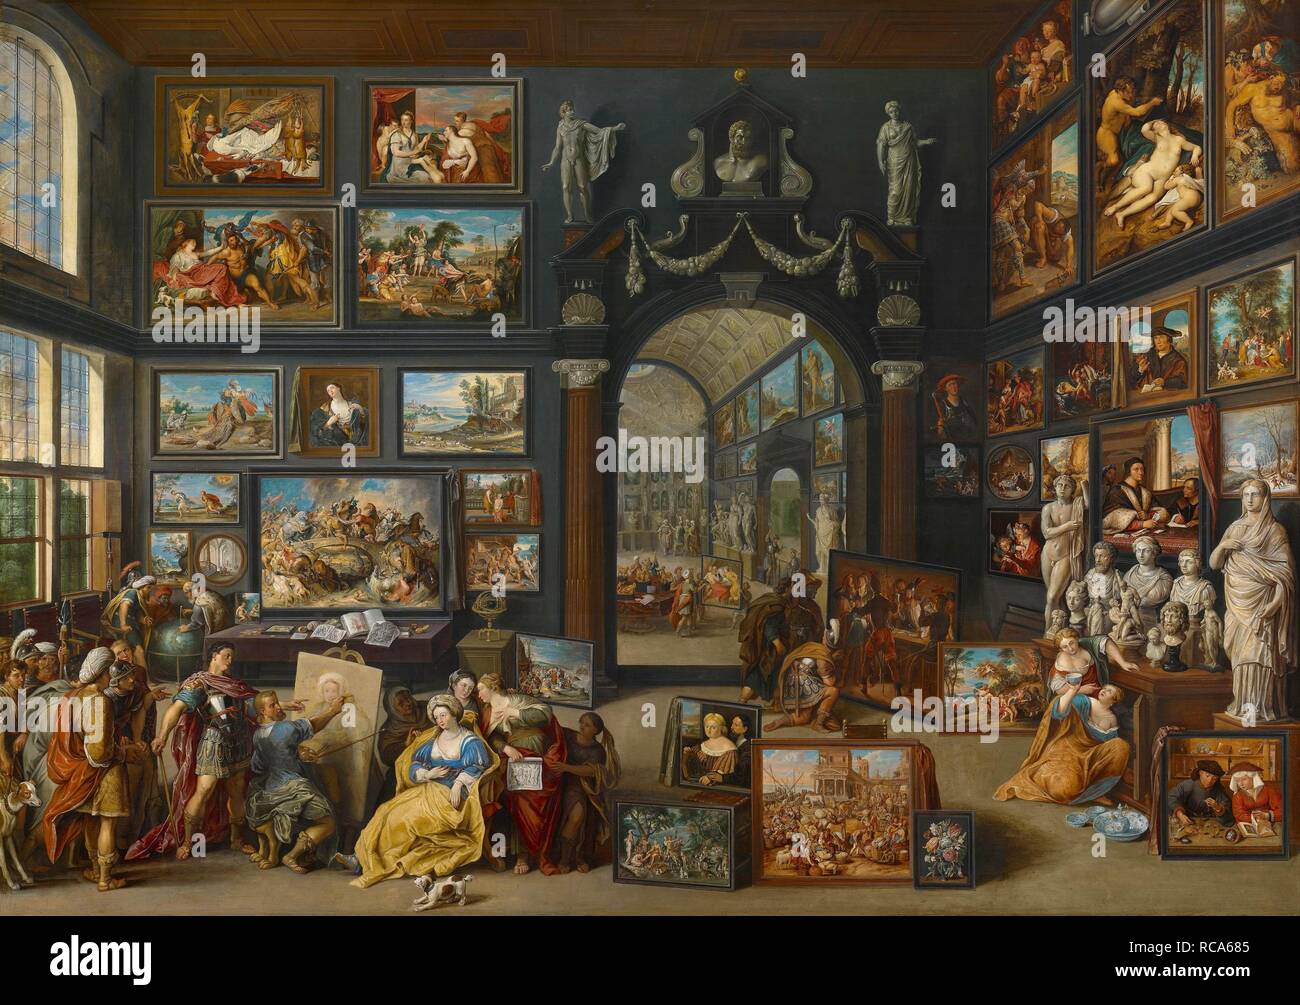 Apelles Malerei Campaspe. Museum: Das Mauritshuis, Den Haag. Autor: Willem van HAECHT. Stockfoto